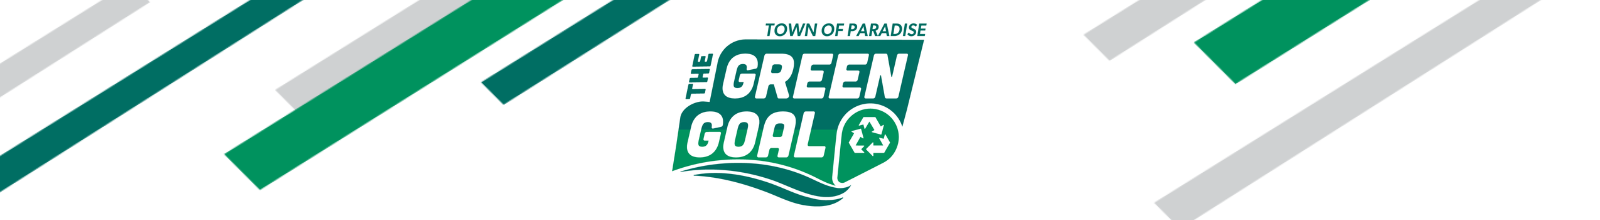 Green Goal